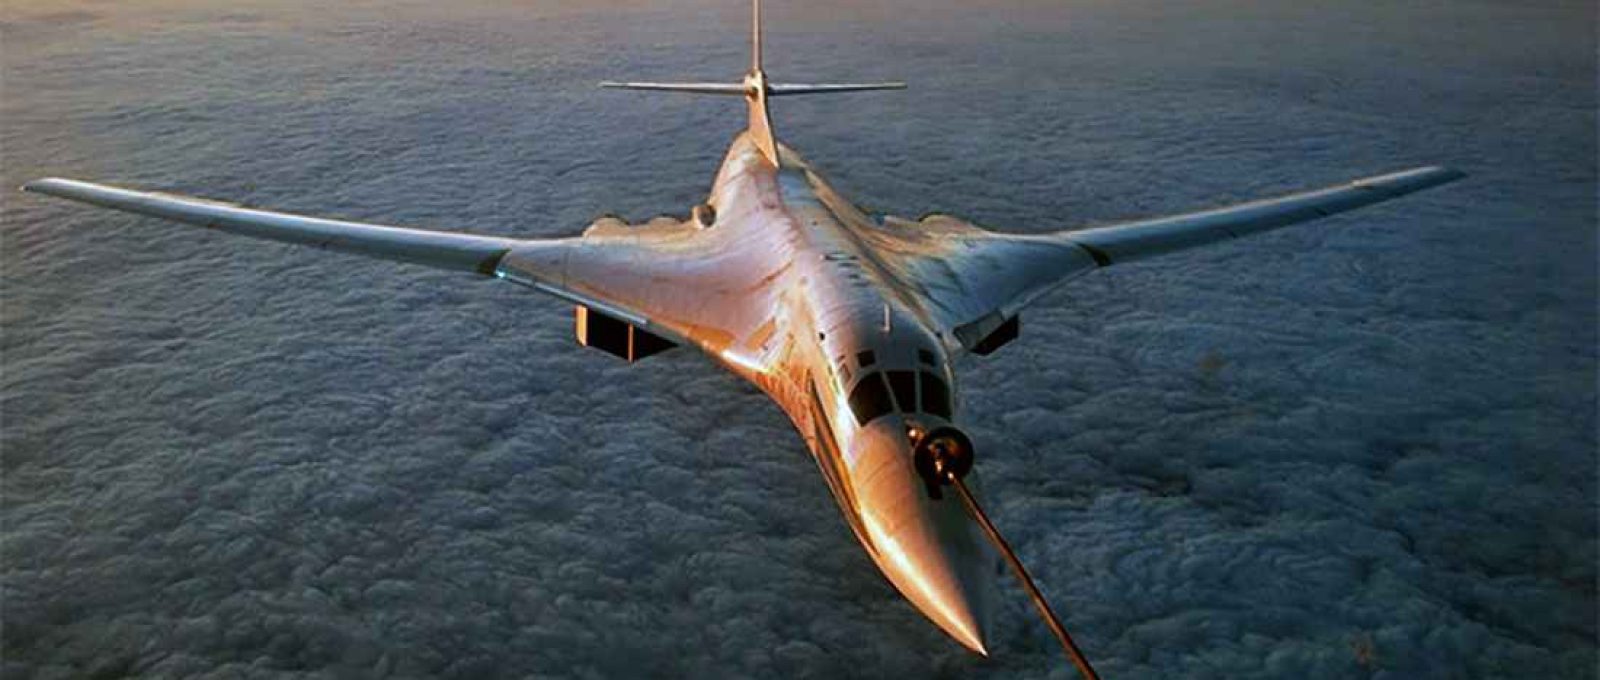 Bombardeiro estratégico Tupolev Tu-160 Blackjack (Ministério da Defesa da Rússia).